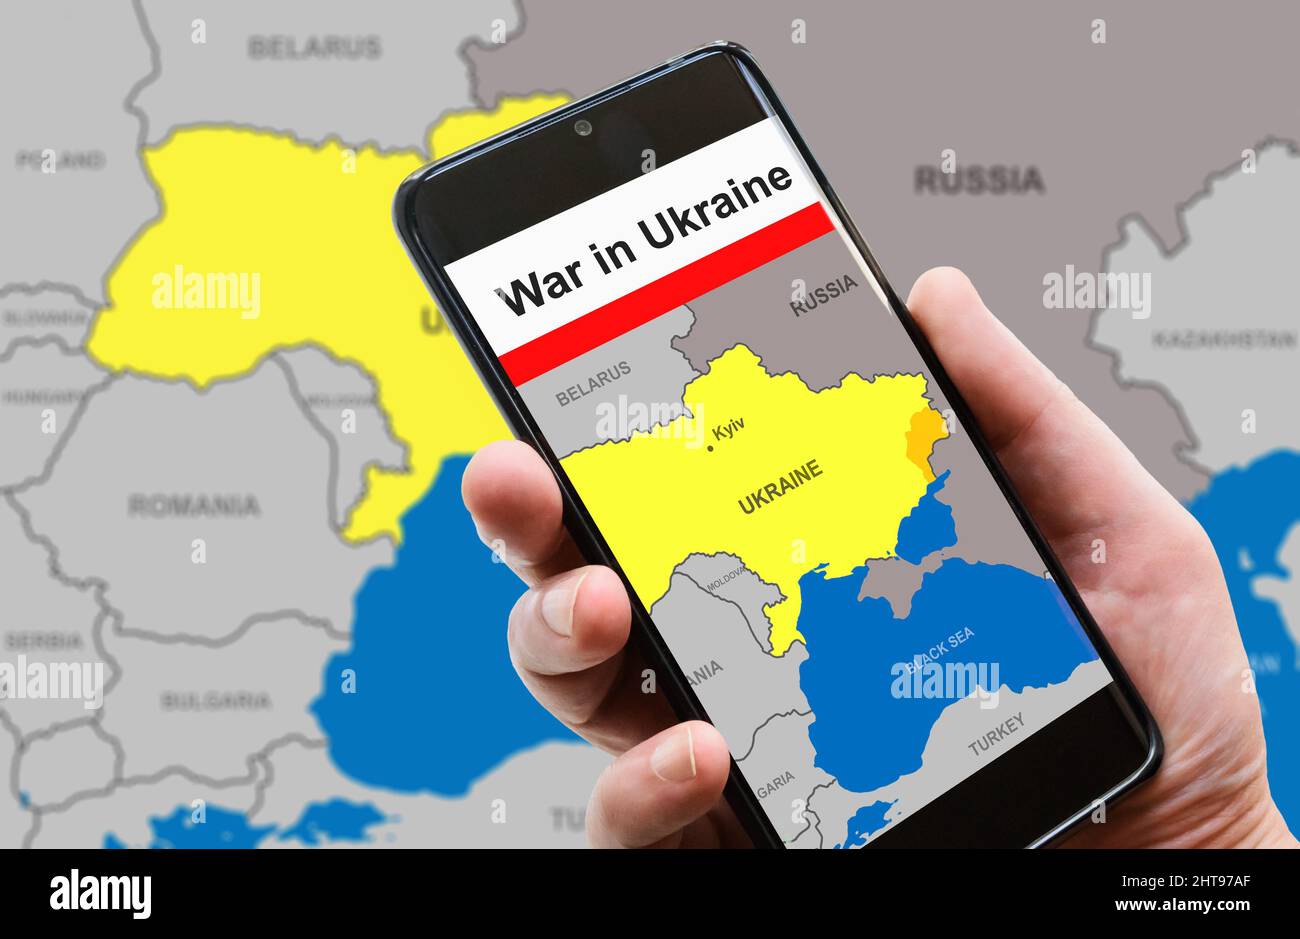 Guerre en Ukraine sur écran de téléphone mobile. L'Ukraine et la Russie sont aux frontières du Donbass sur la carte de l'Europe. Conflit russo-ukrainien sur les smartphones. Concept de méd Banque D'Images